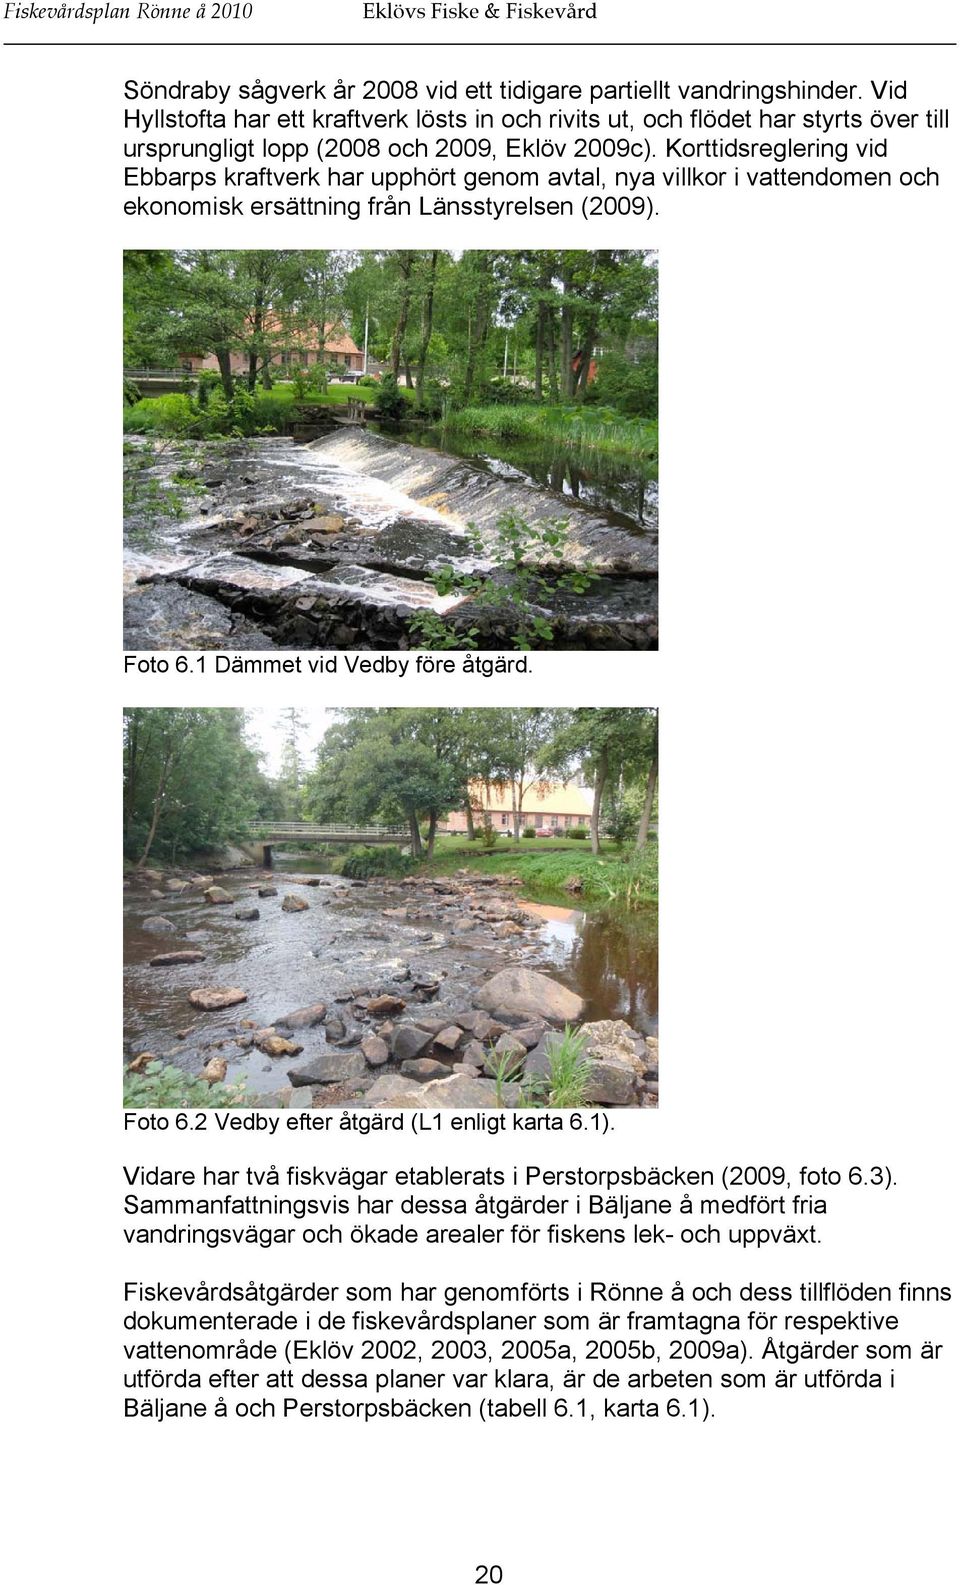 Korttidsreglering vid Ebbarps kraftverk har upphört genom avtal, nya villkor i vattendomen och ekonomisk ersättning från Länsstyrelsen (2009). Foto 6.1 Dämmet vid Vedby före åtgärd. Foto 6.2 Vedby efter åtgärd (L1 enligt karta 6.